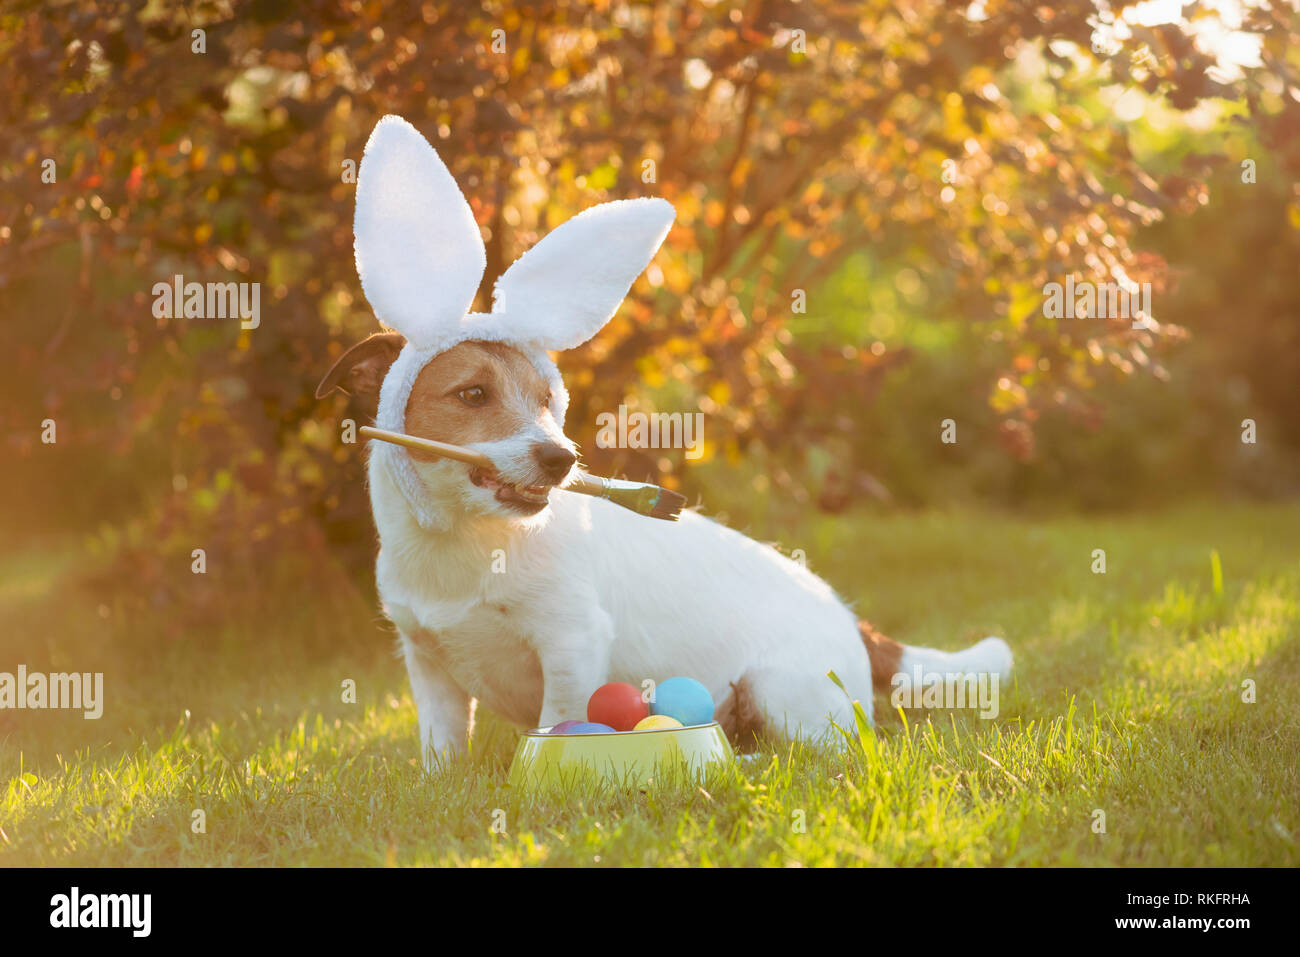 Dog wearing Bunny Ears peinture et coloriage des oeufs pour des fêtes de Pâques Banque D'Images